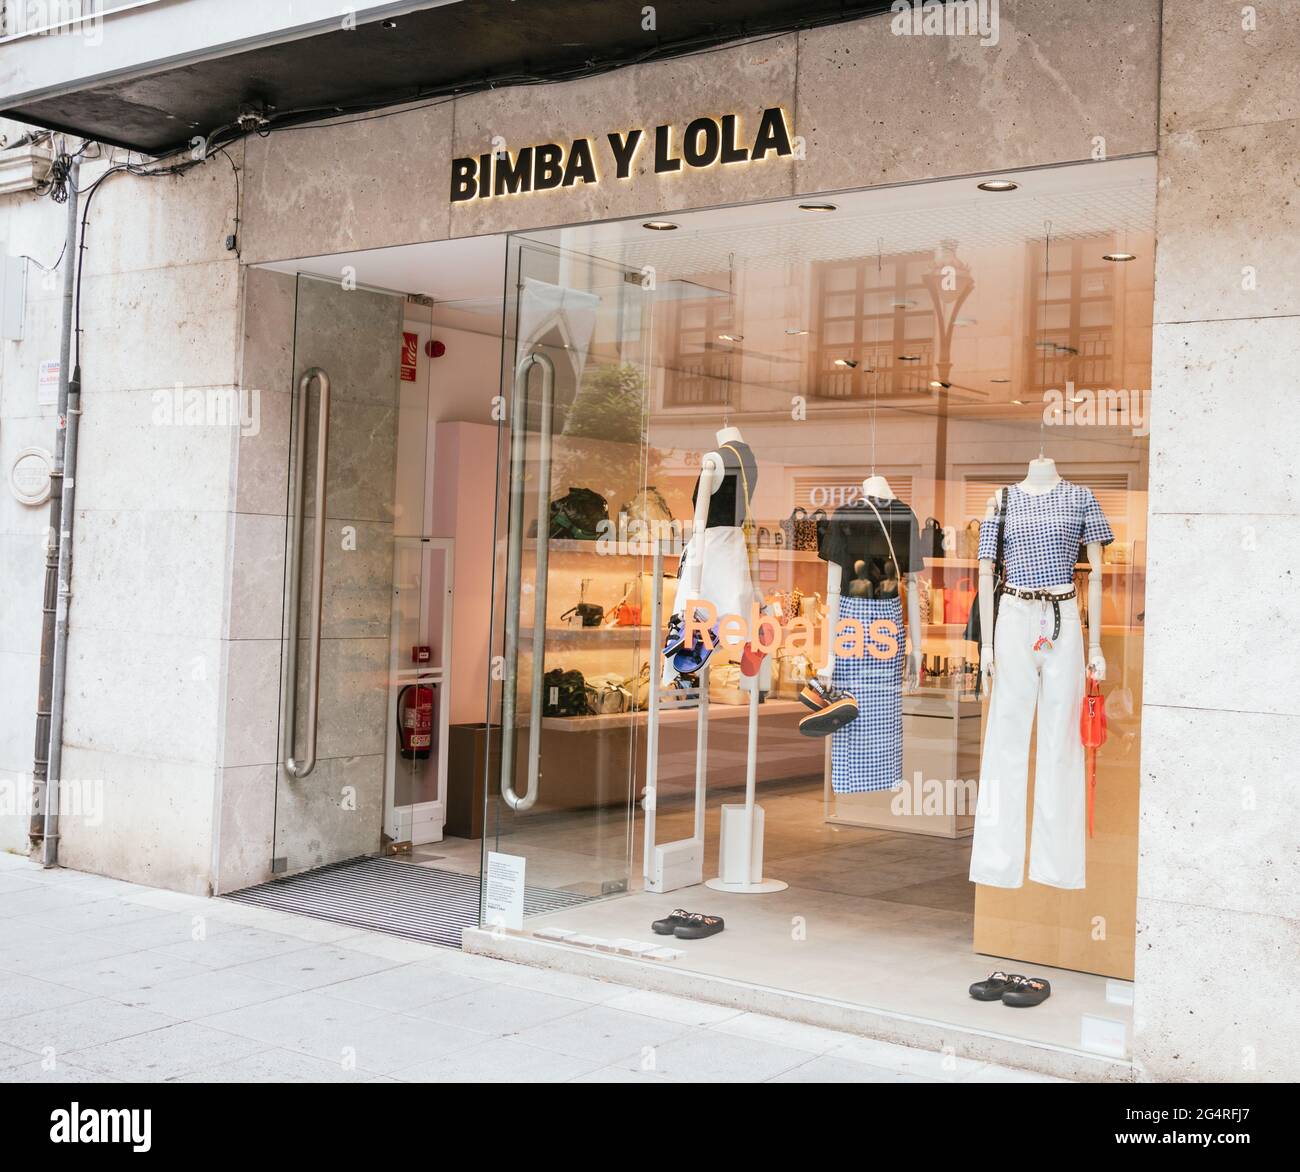 Valladolid, Spagna - 22 giugno 2021: Negozio Bimba y Lola. Negozio di  stoffe Foto stock - Alamy